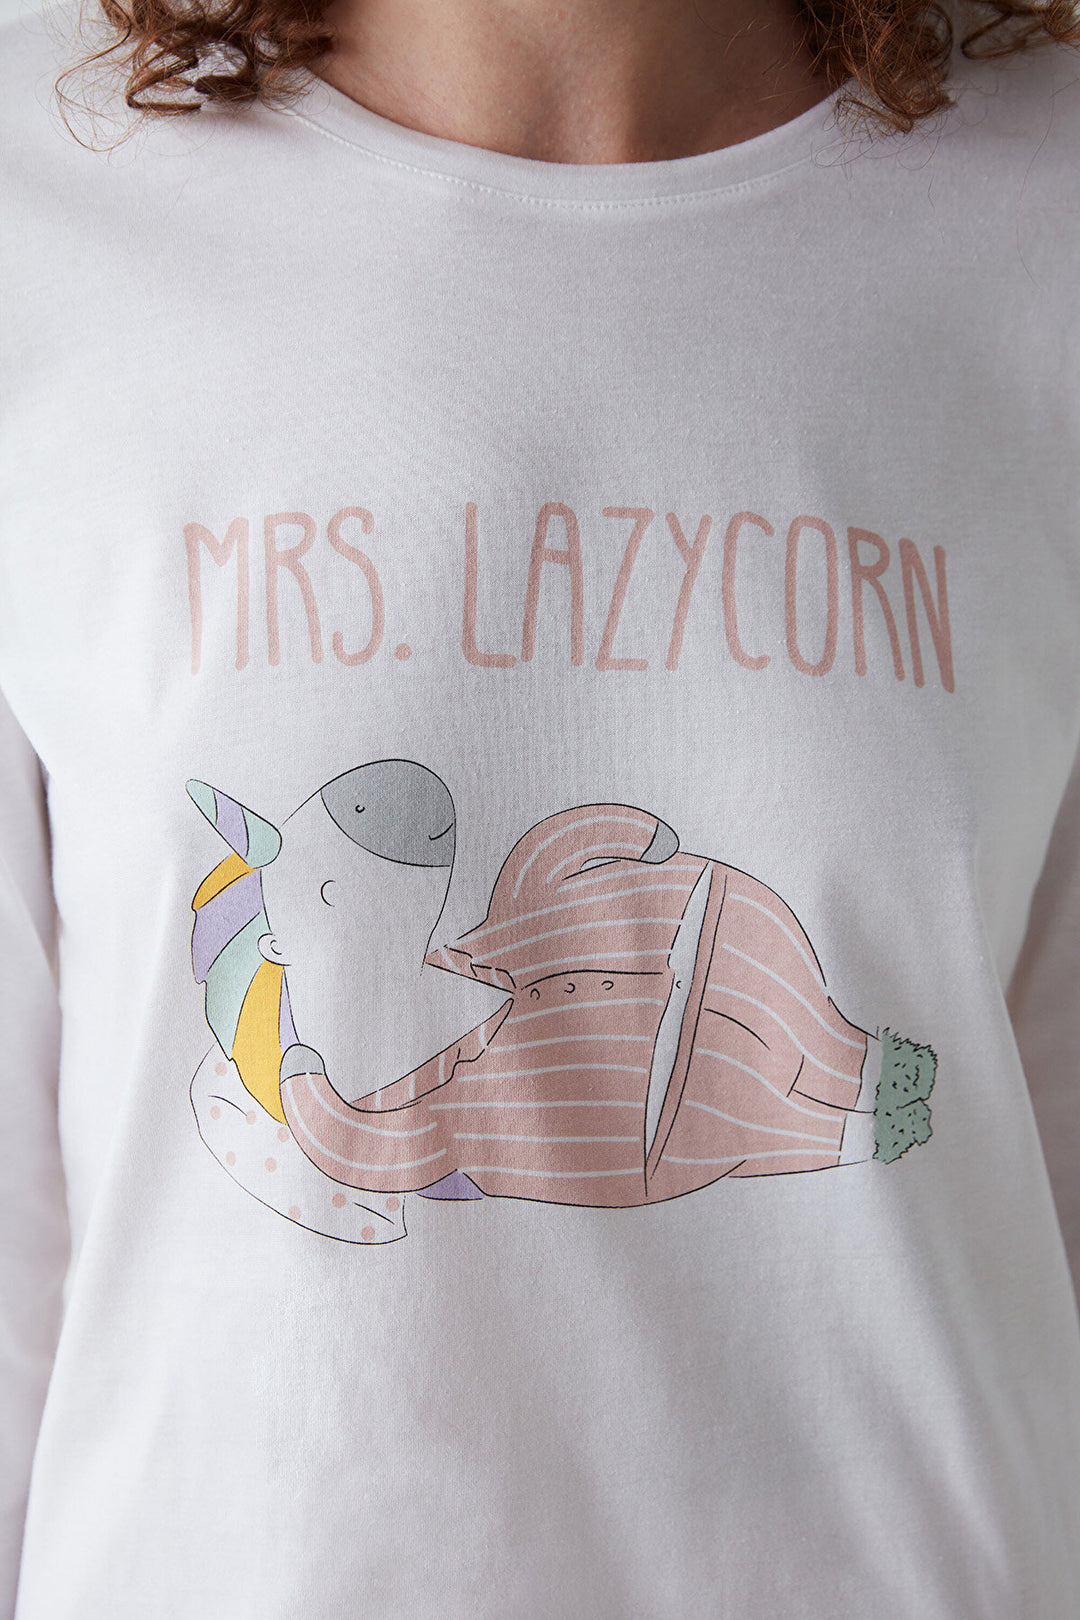 Lazycorn PJ Set